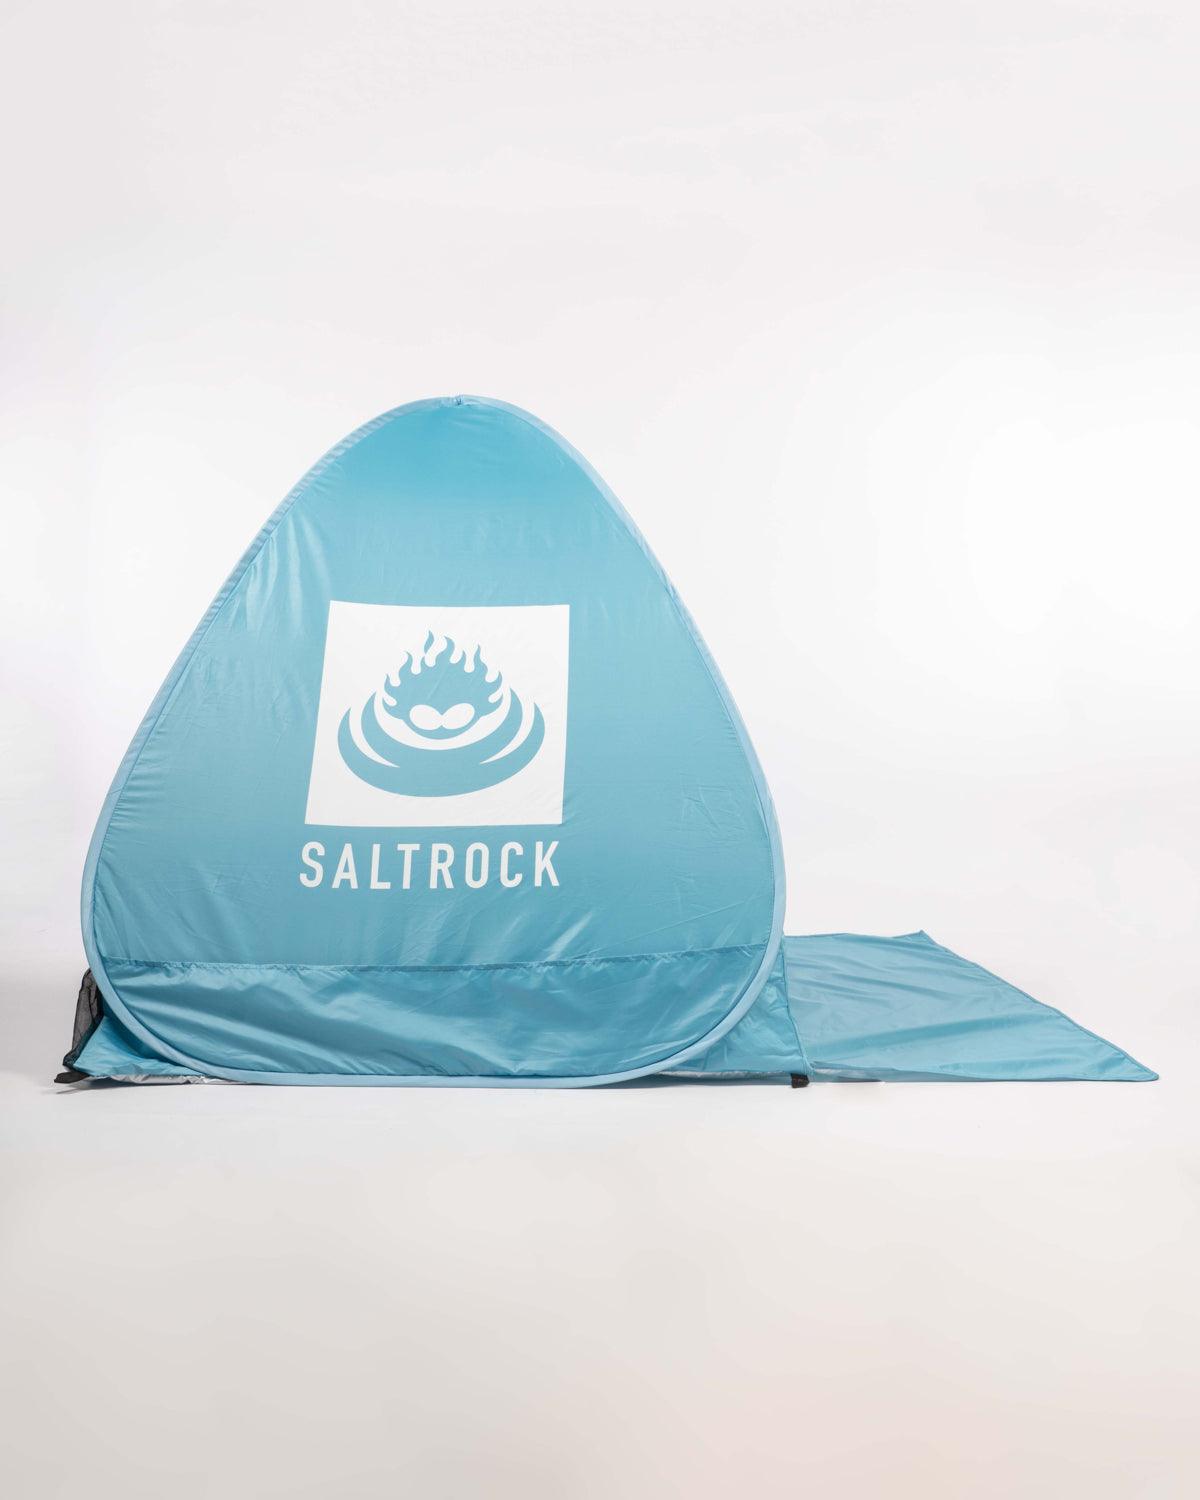 Canggu - Pop Up Beach Tent - Saltrock